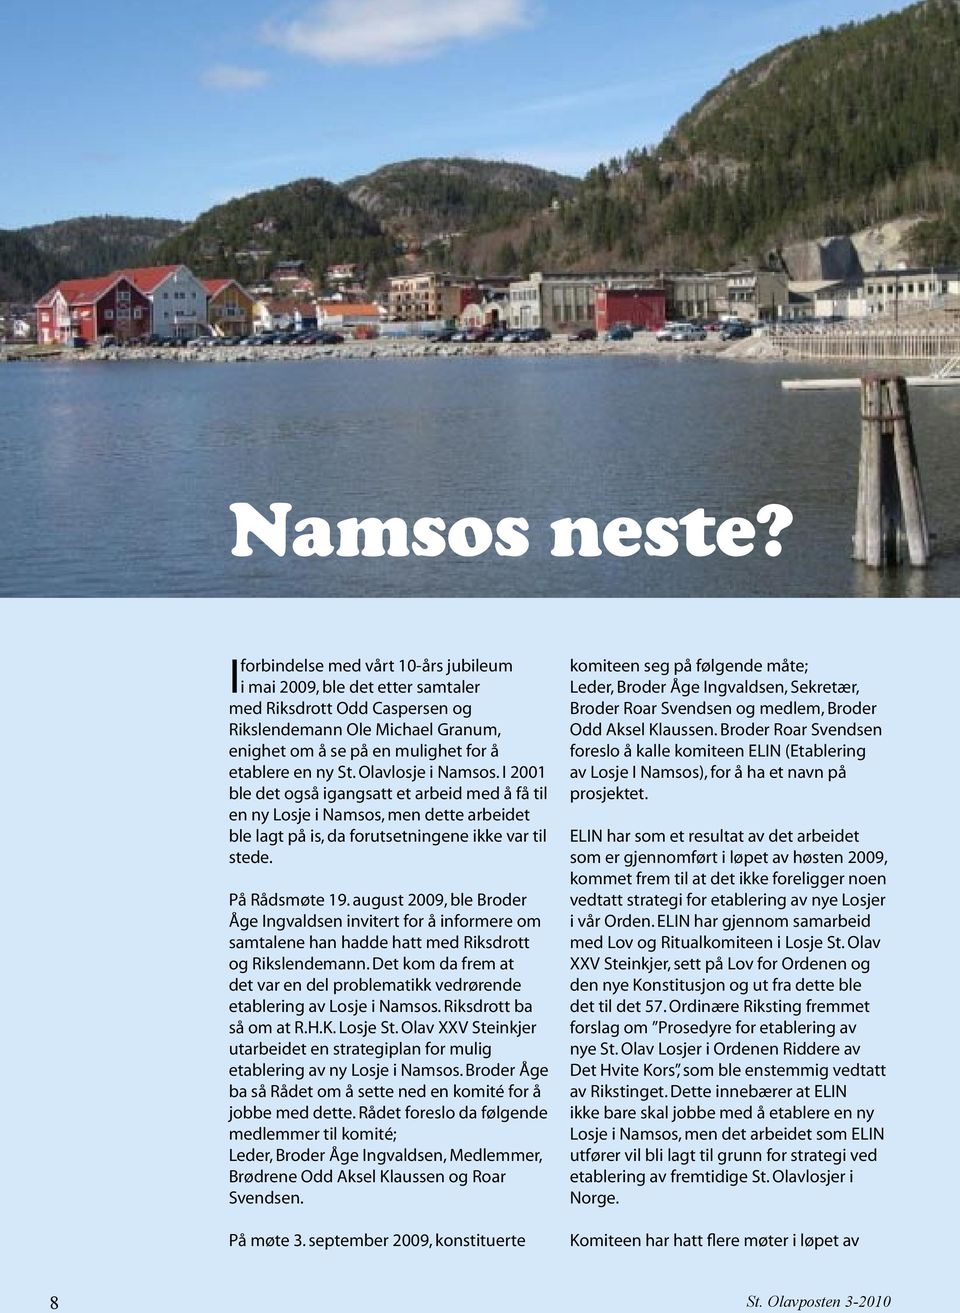 Olavlosje i Namsos. I 2001 ble det også igangsatt et arbeid med å få til en ny Losje i Namsos, men dette arbeidet ble lagt på is, da forutsetningene ikke var til stede. På Rådsmøte 19.